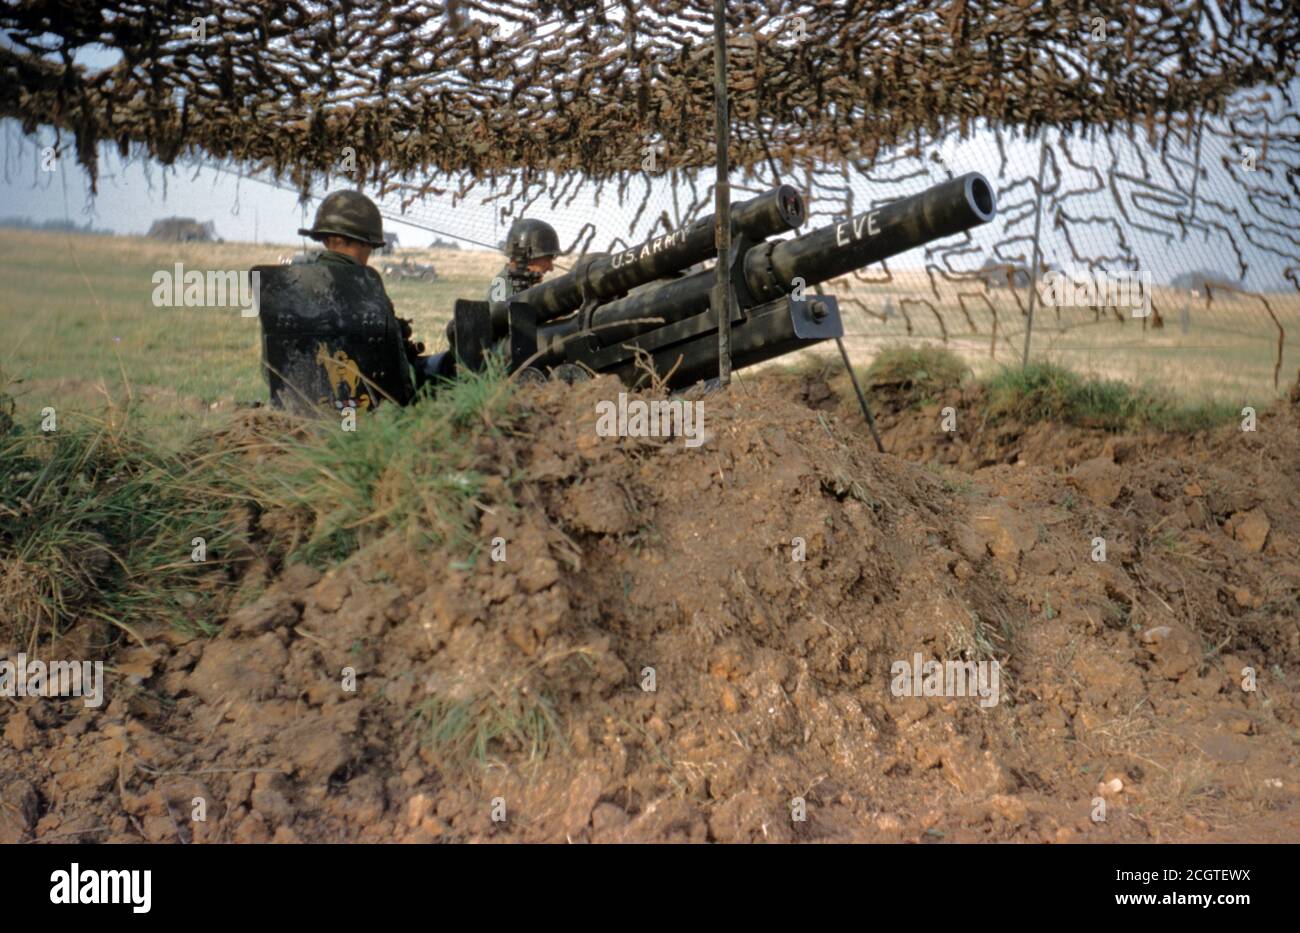 Korea-Krieg US ARMY / United States Army Leichte Feldhaubitze M101 / M2 105 mm - Korean War Leight Howitzer M101 / M2 105mm / 4.1 Inch Stock Photo